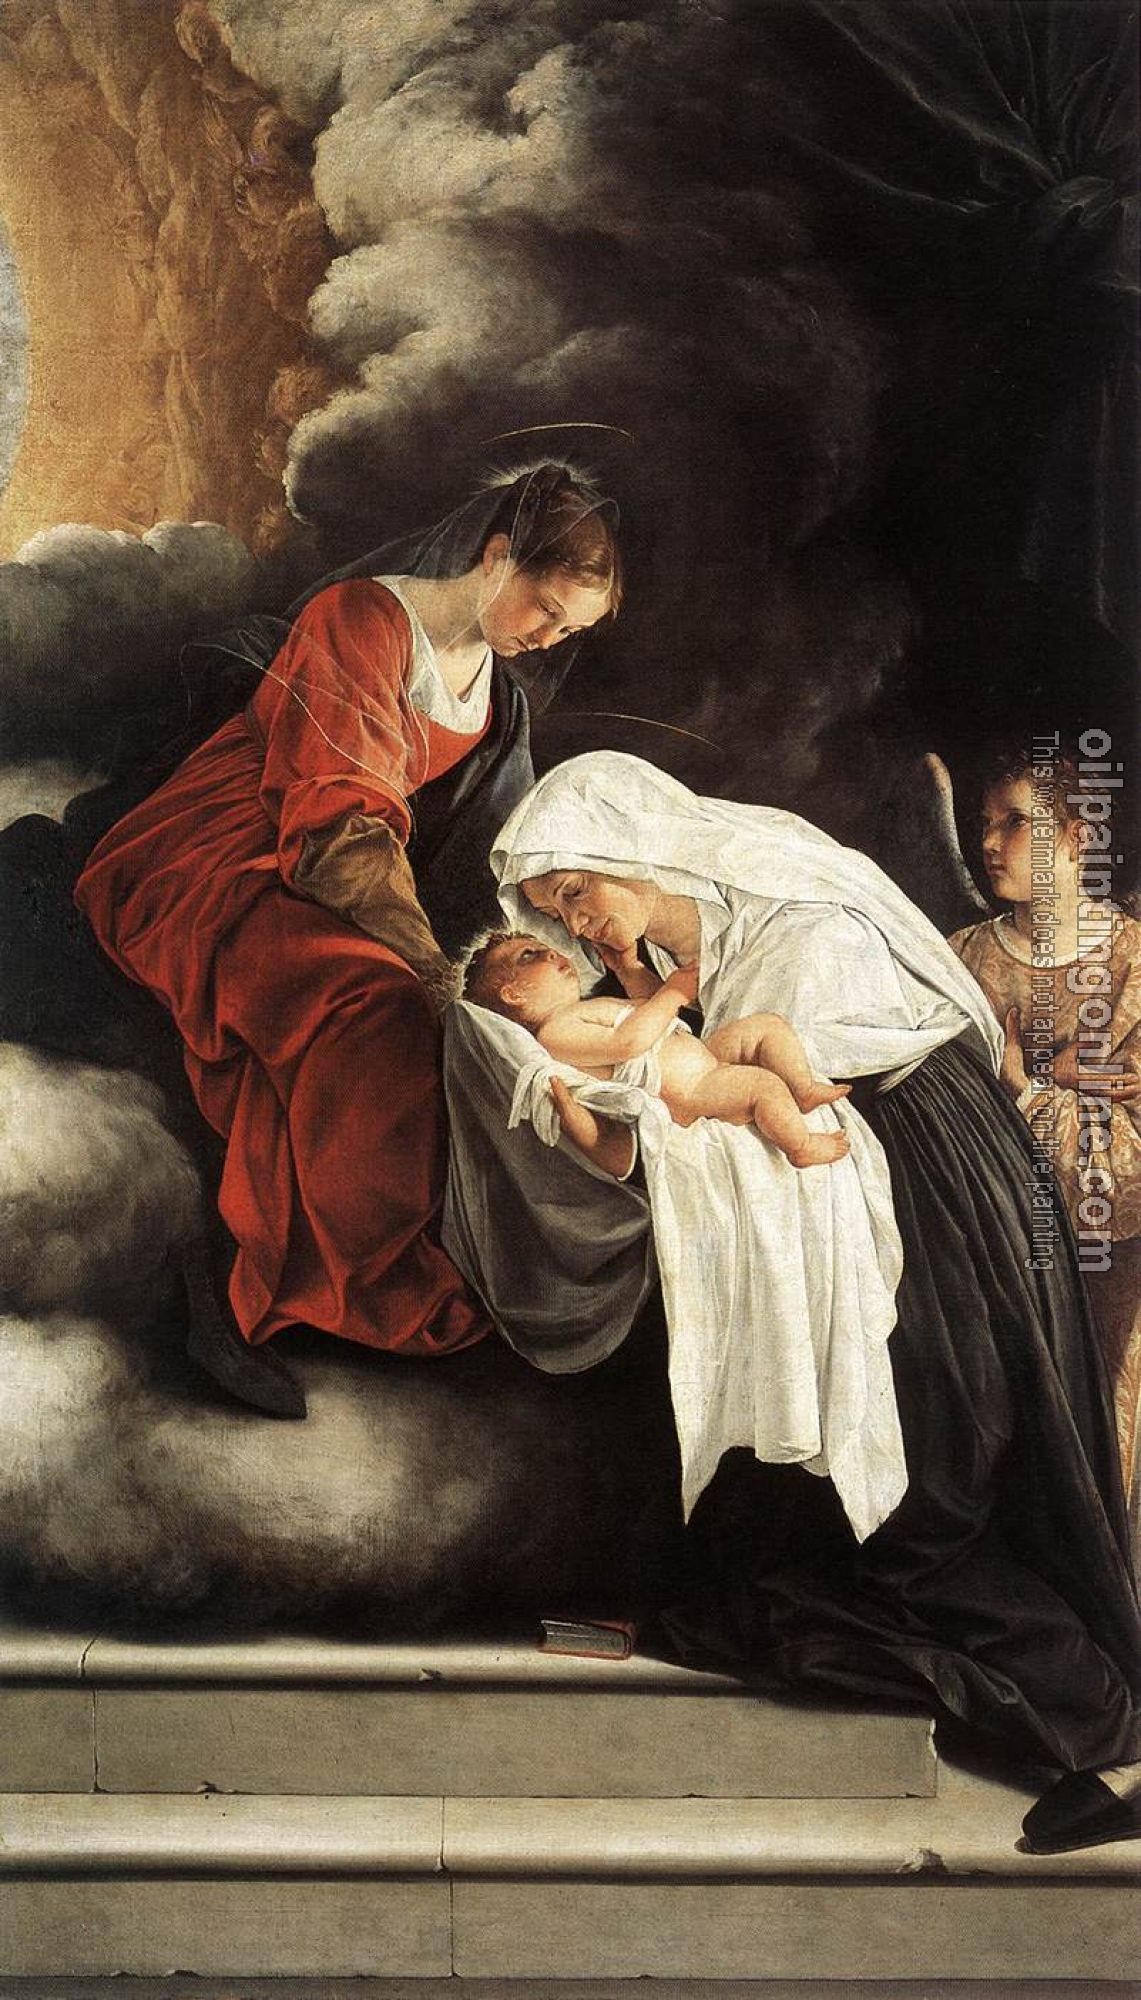 Gentileschi, Orazio - The Vision of St Francesca Romana